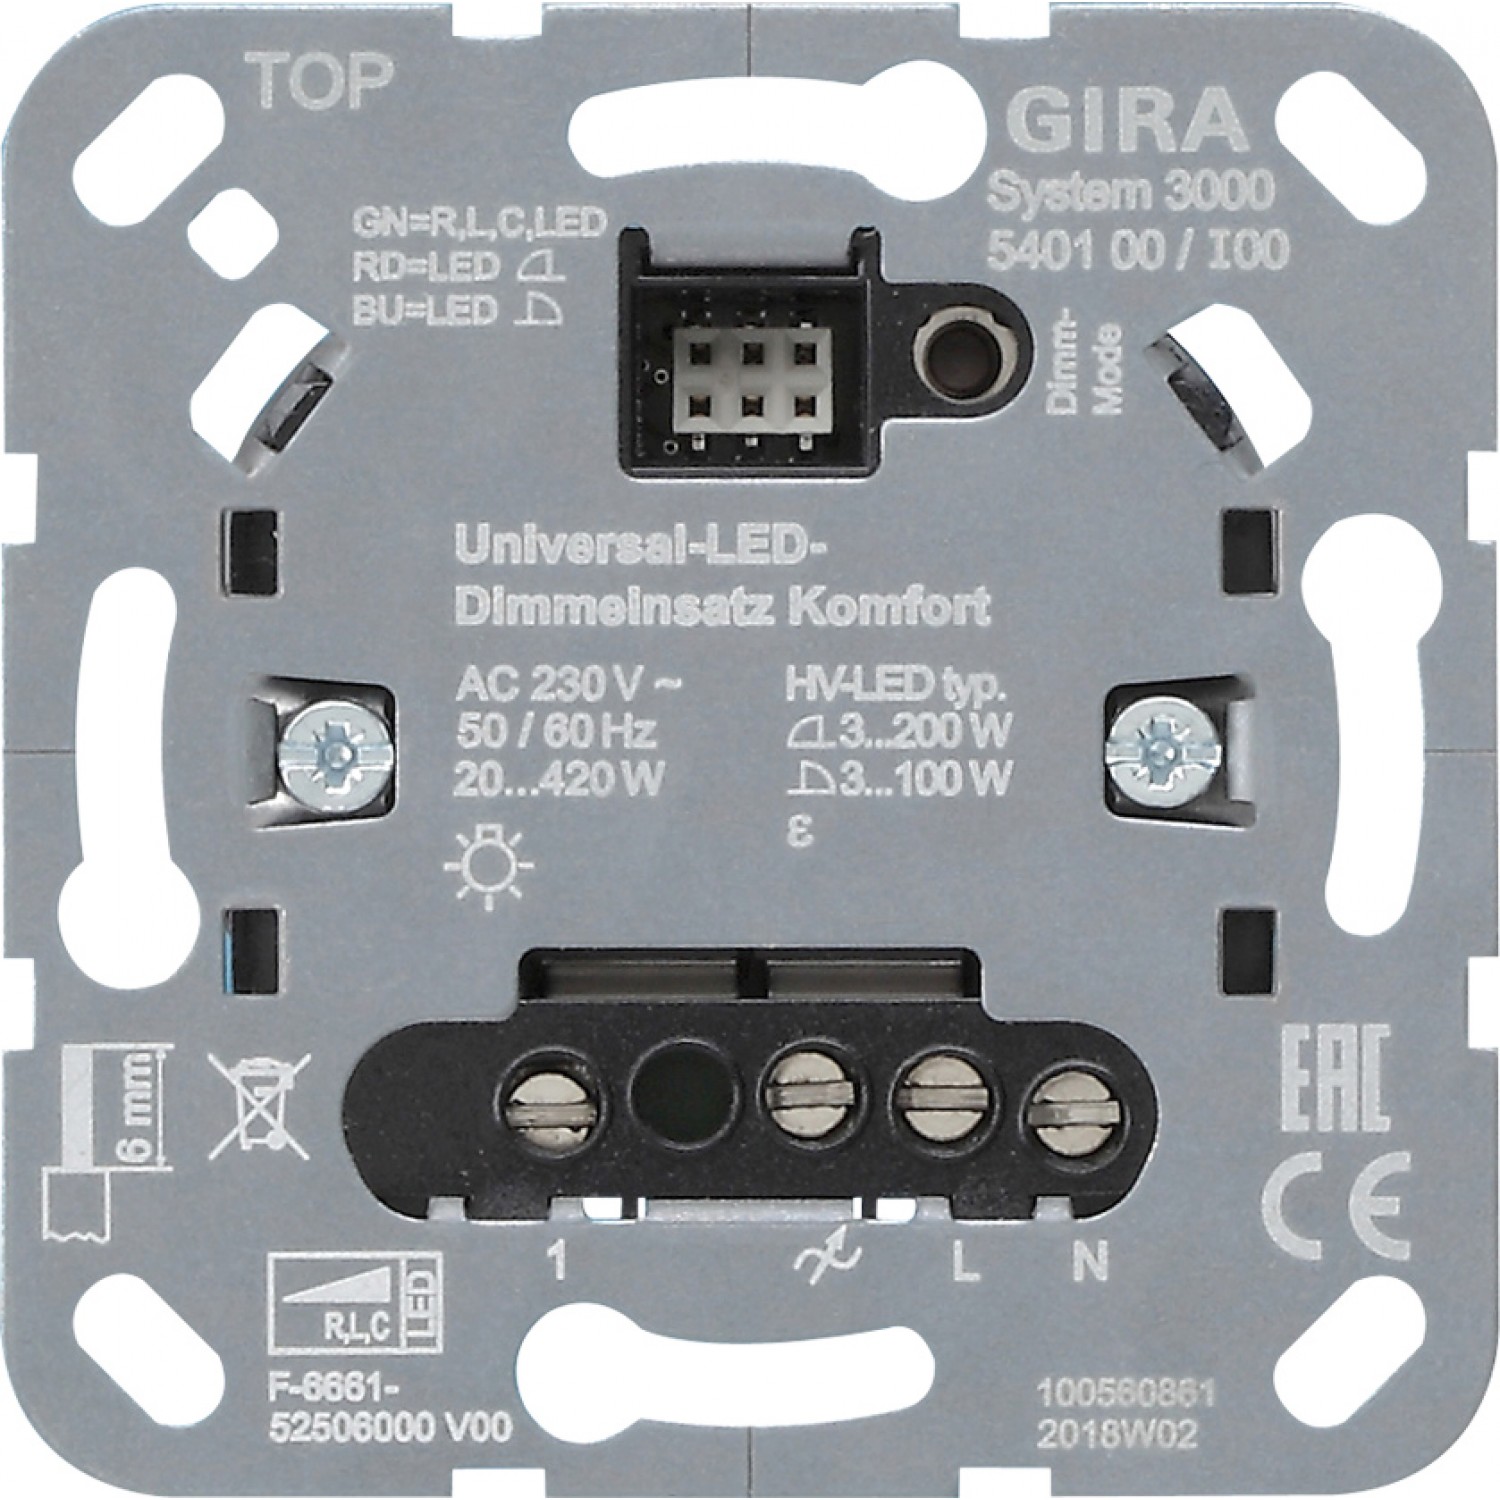 alt_image Электрофурнитура Gira Светорегулятор универсальный LED Komfort S3000, вставка 540100